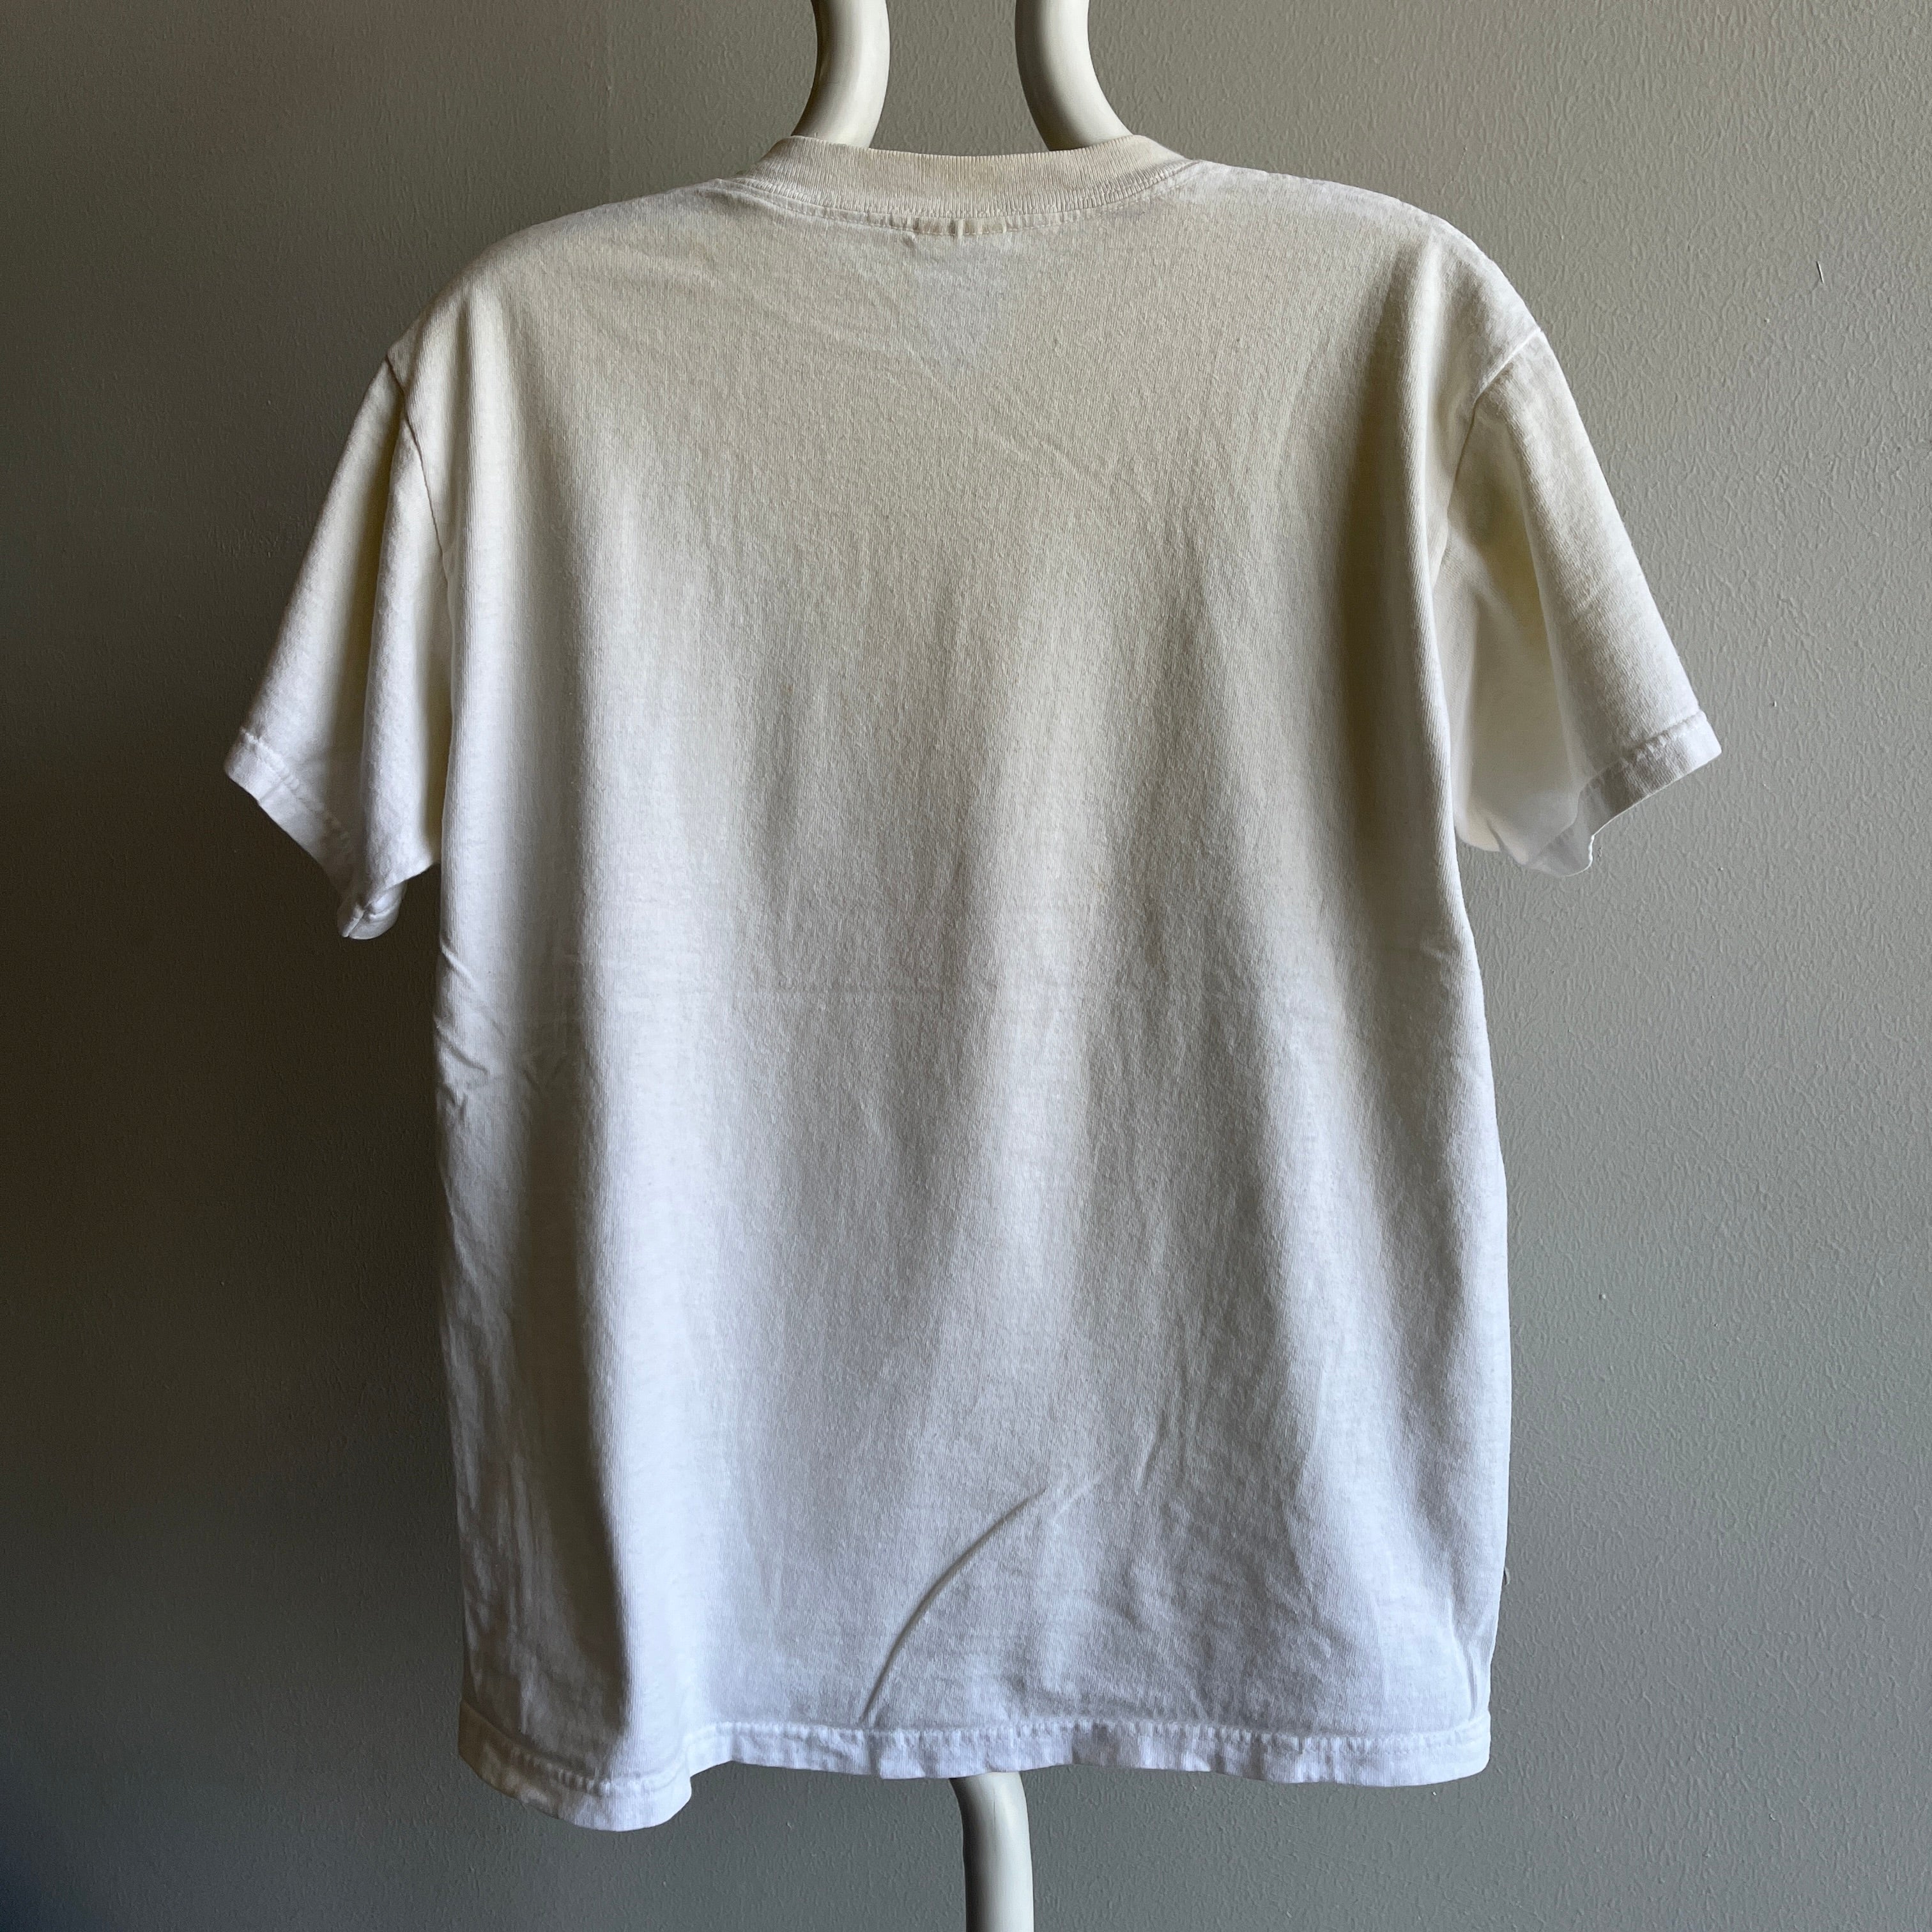 1990s Pooh + Krystal 4Eva Air Brush T-Shirt